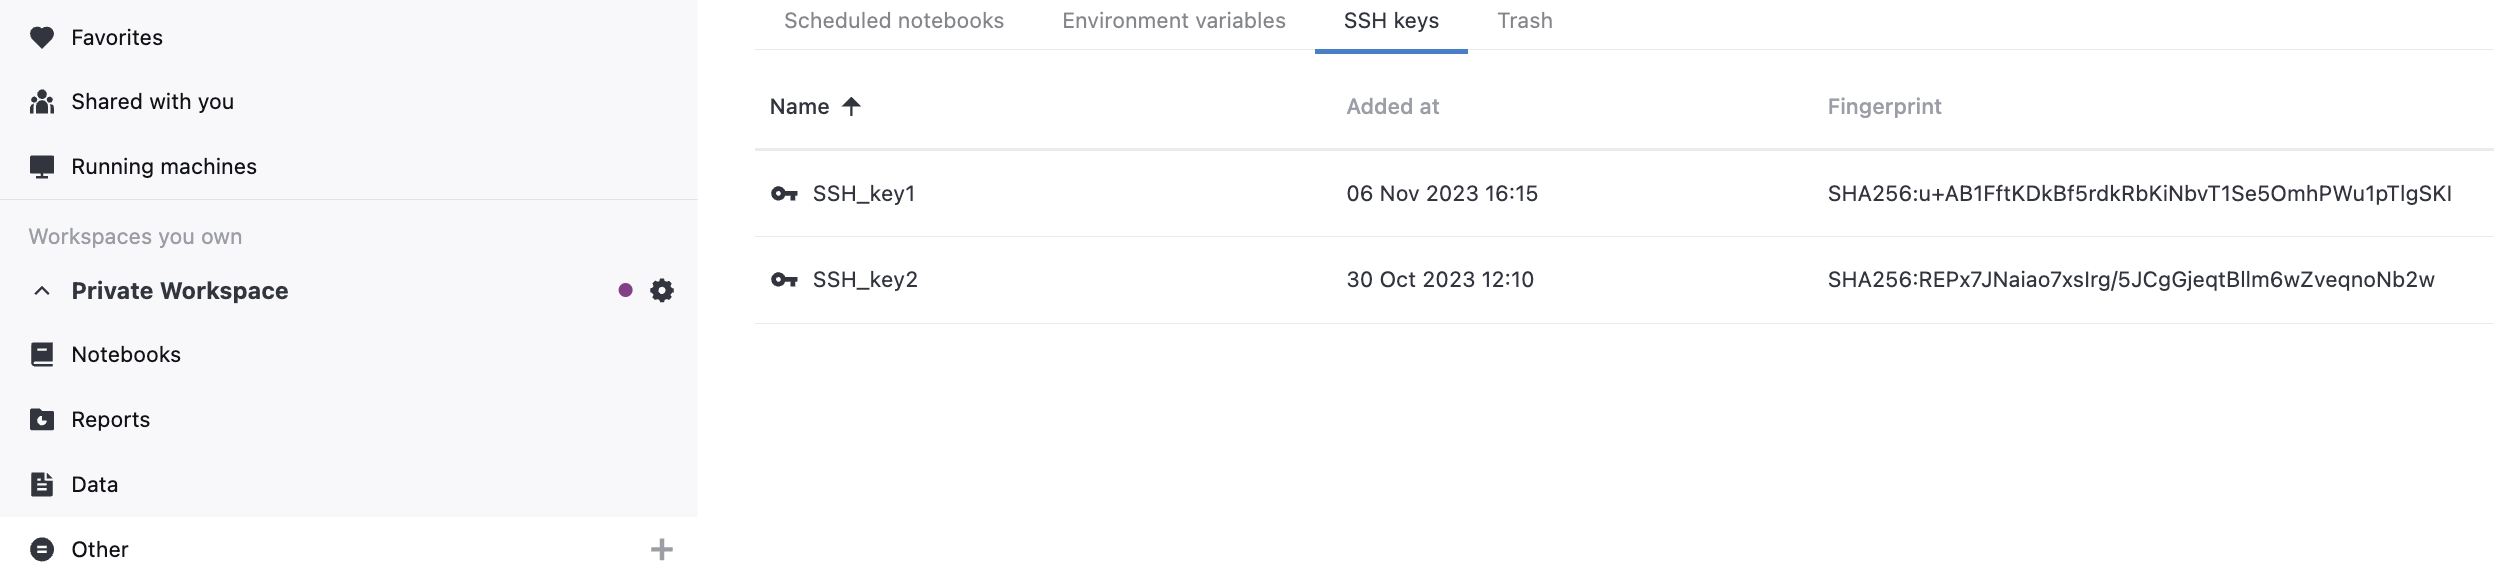 SSH keys tab